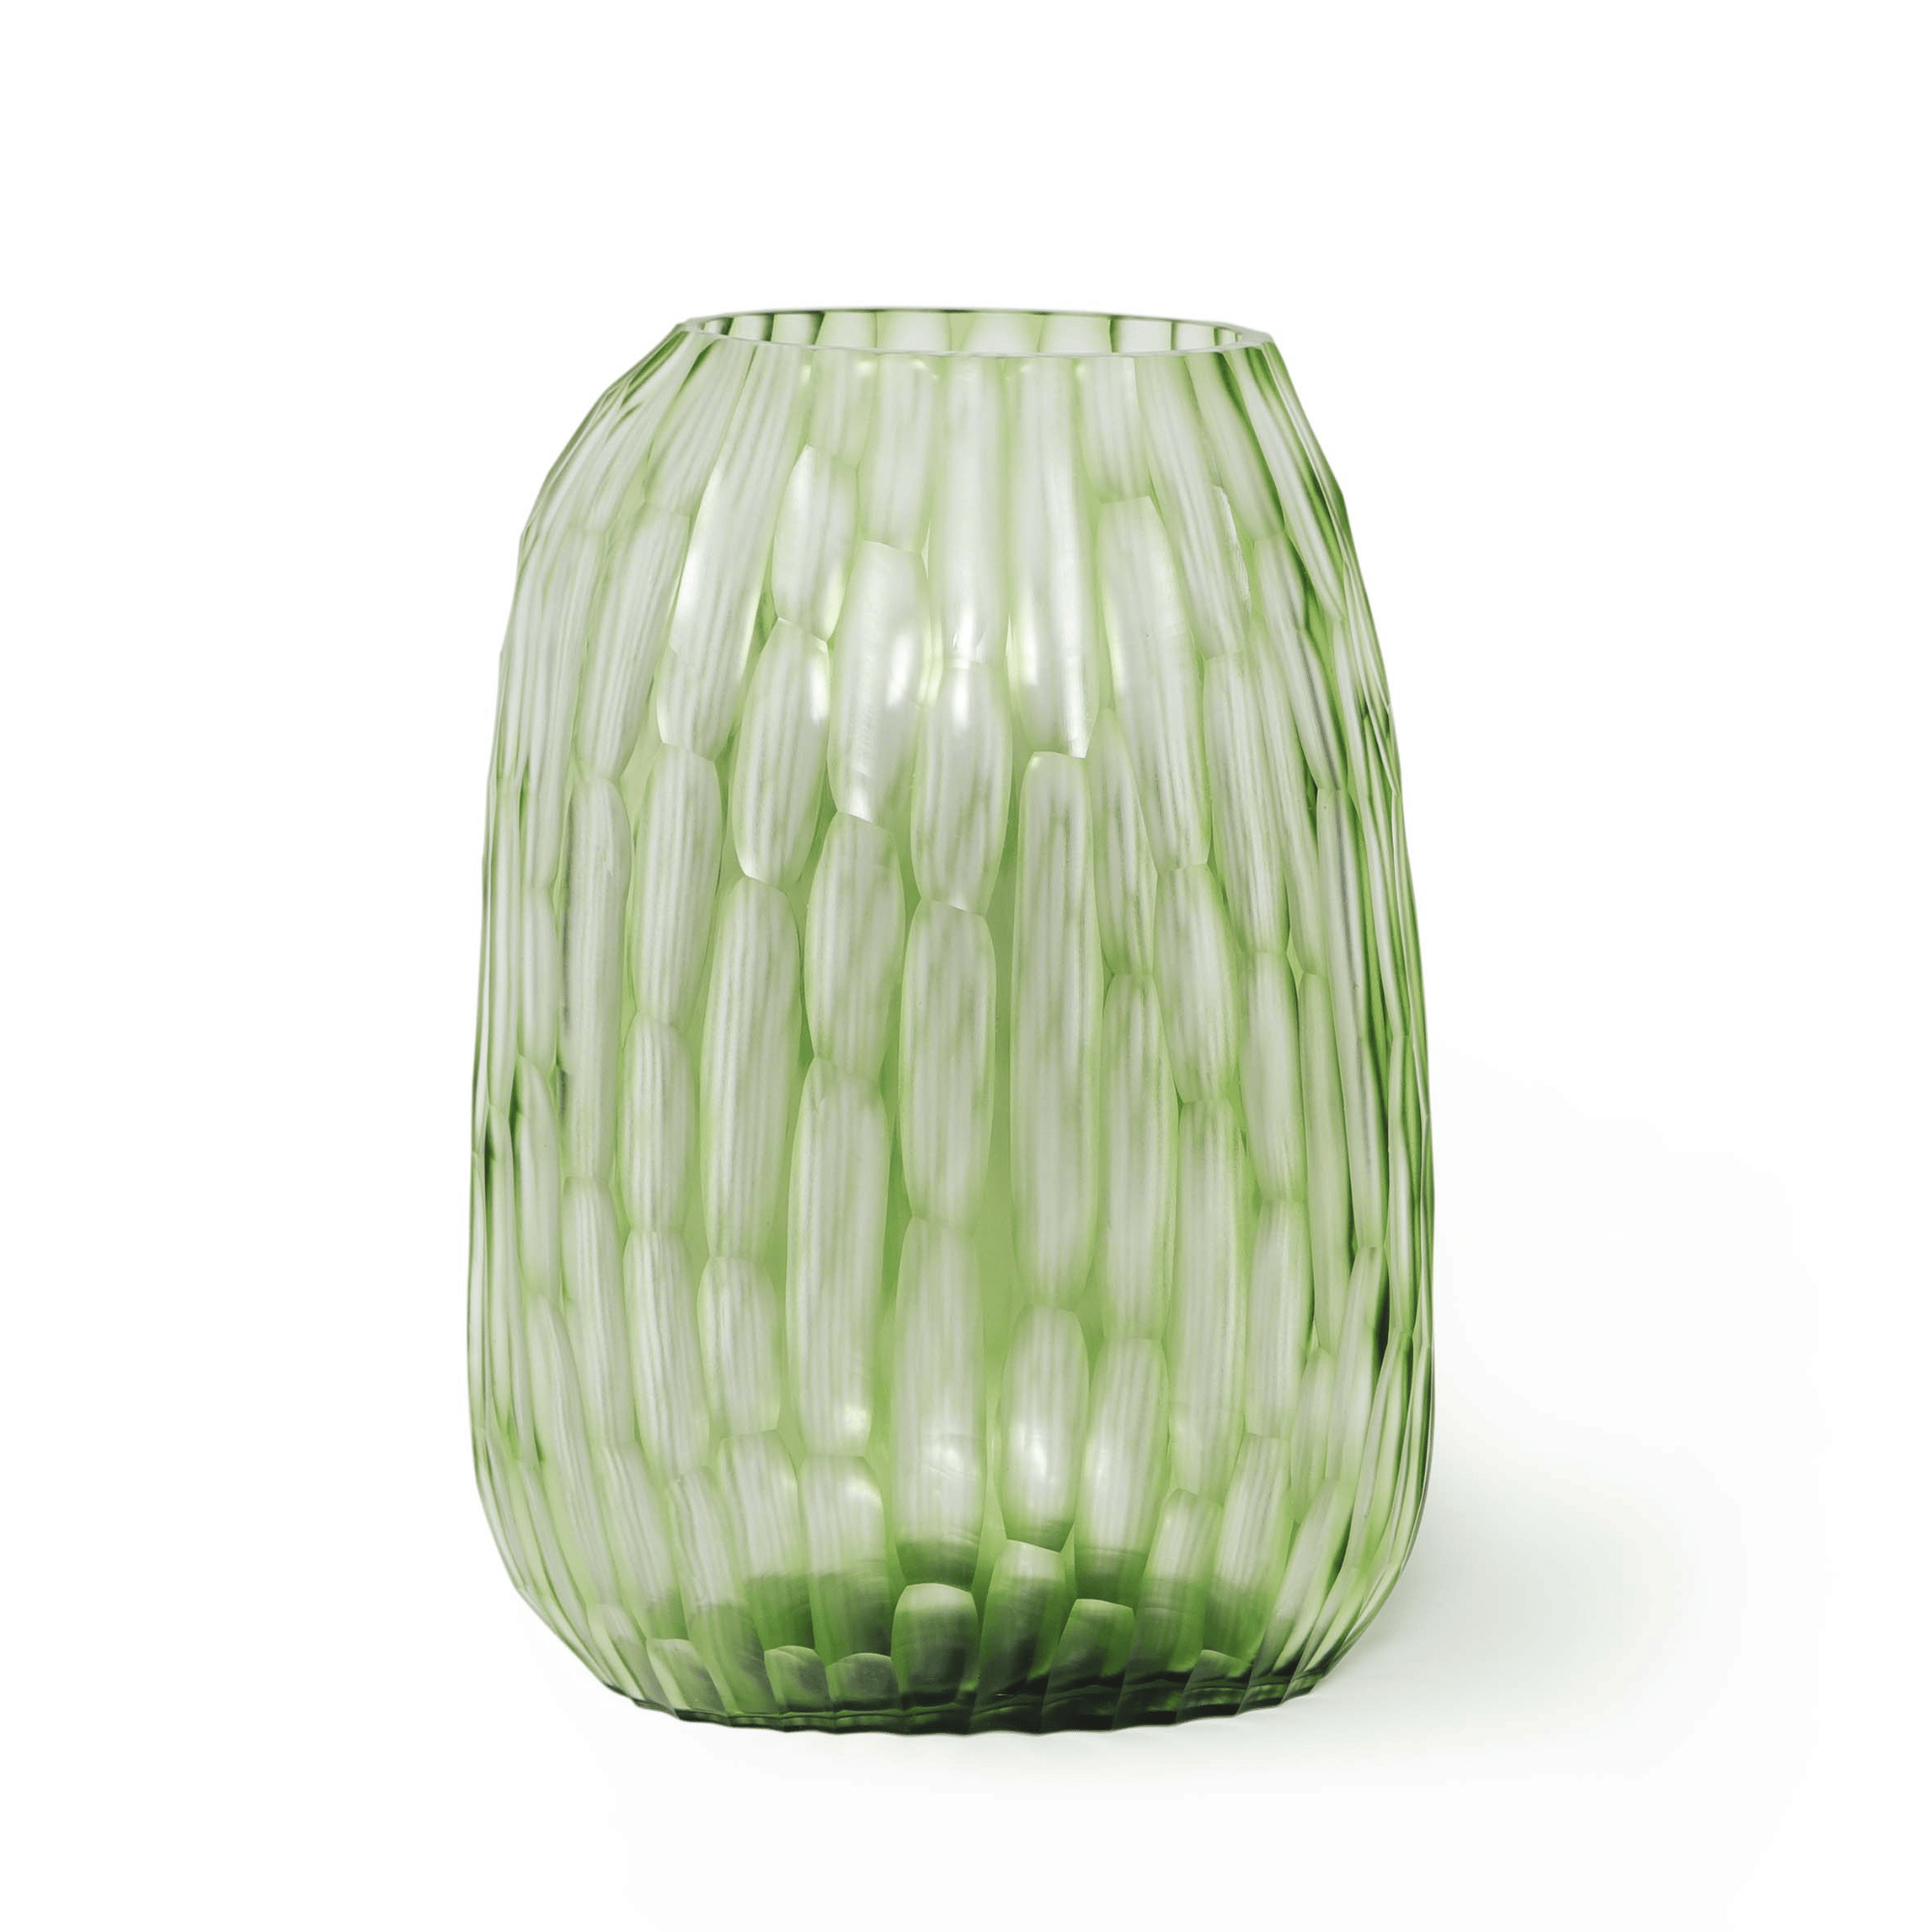 GUAXS tall texture vase green